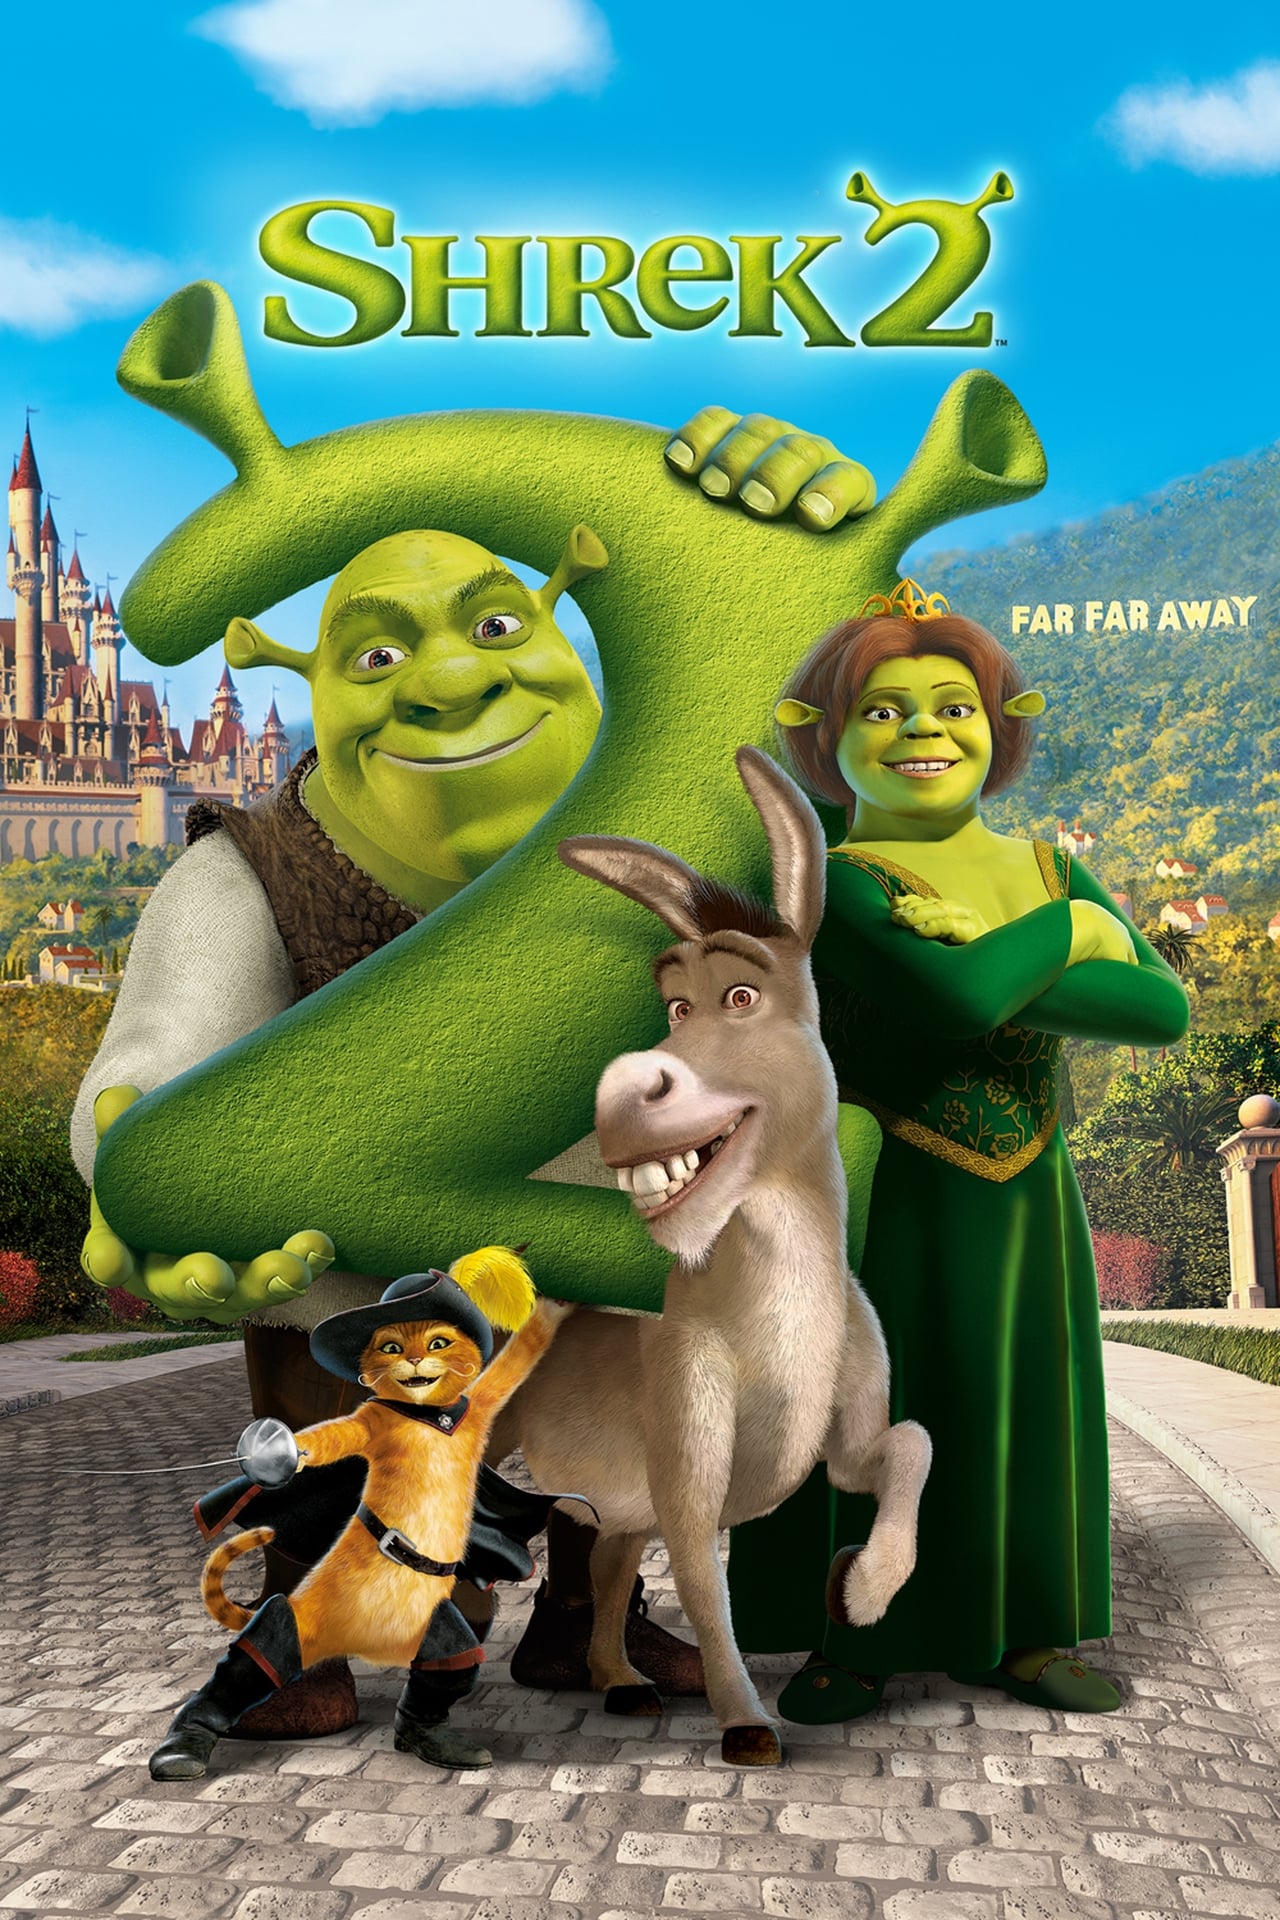 Shrek 2 (2004) 640Kbps 23.976Fps 48Khz 5.1Ch BluRay Turkish Audio TAC